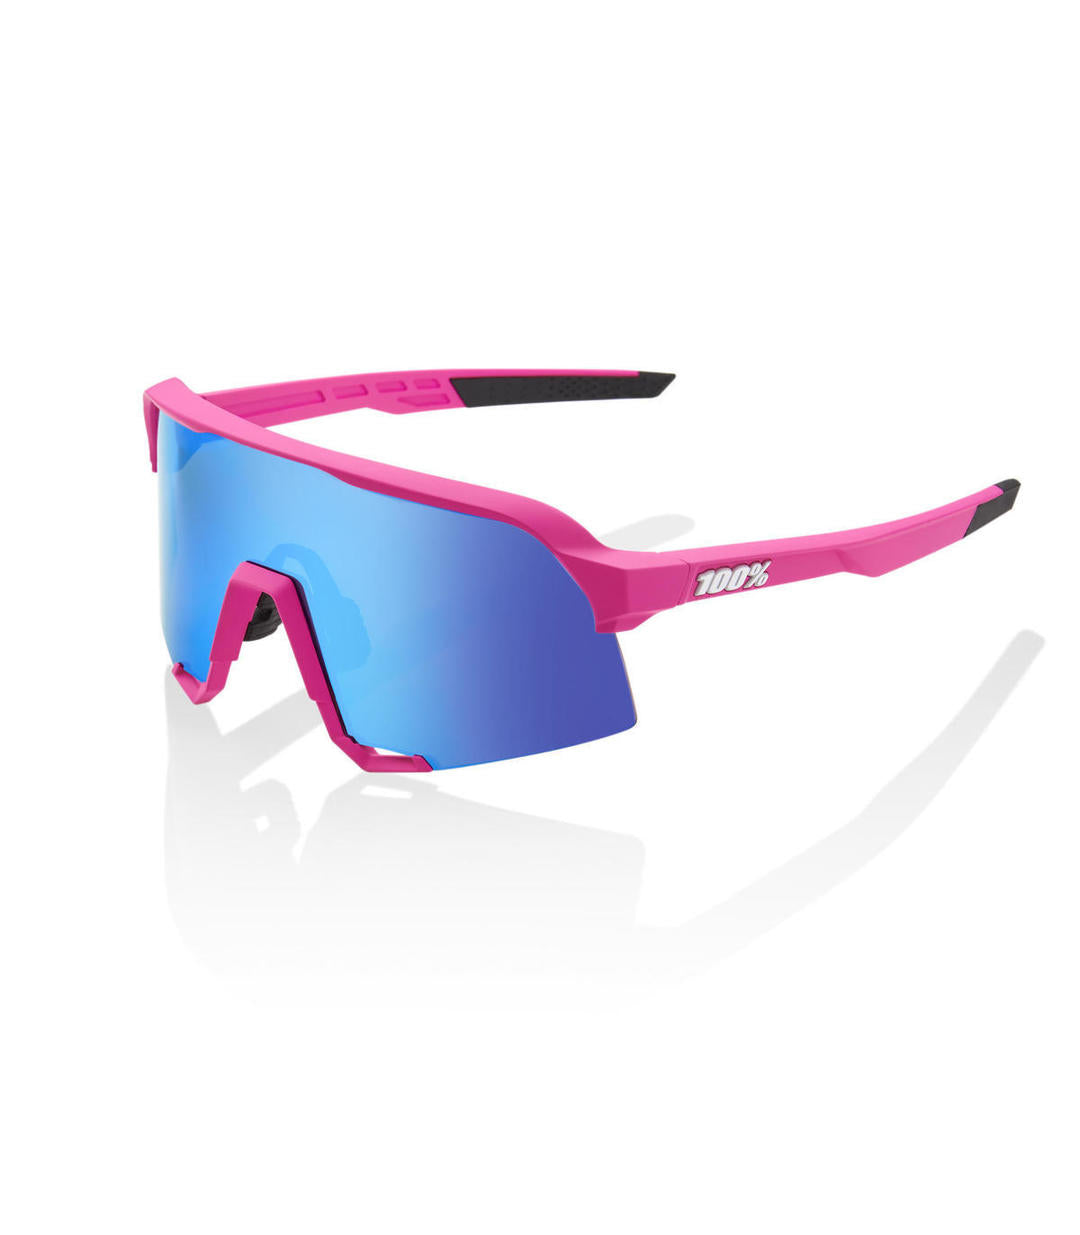 RIDE 100% Gafas de Sol S3 - Pink Hiper Blue Multilayer Mirror Lens